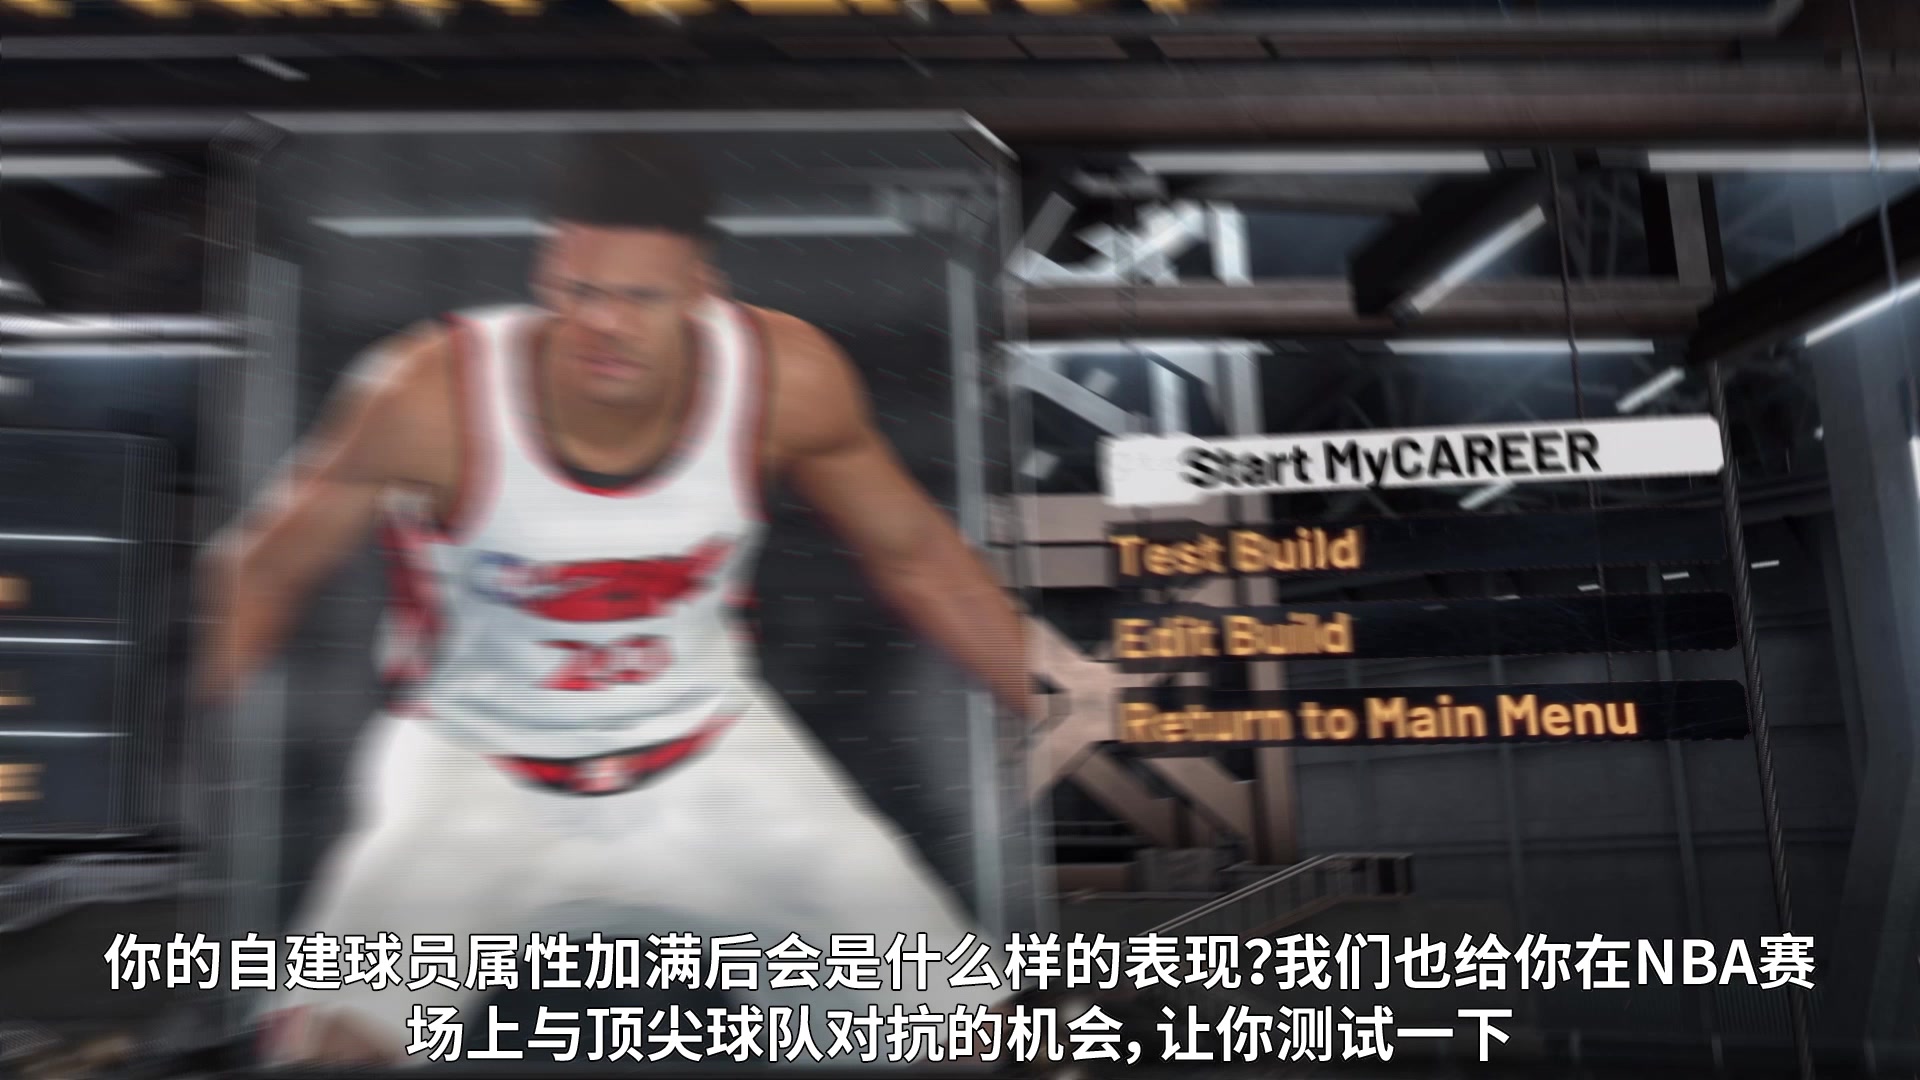 全新輝煌模式預告展示 《NBA 2K20》Demo試玩推出